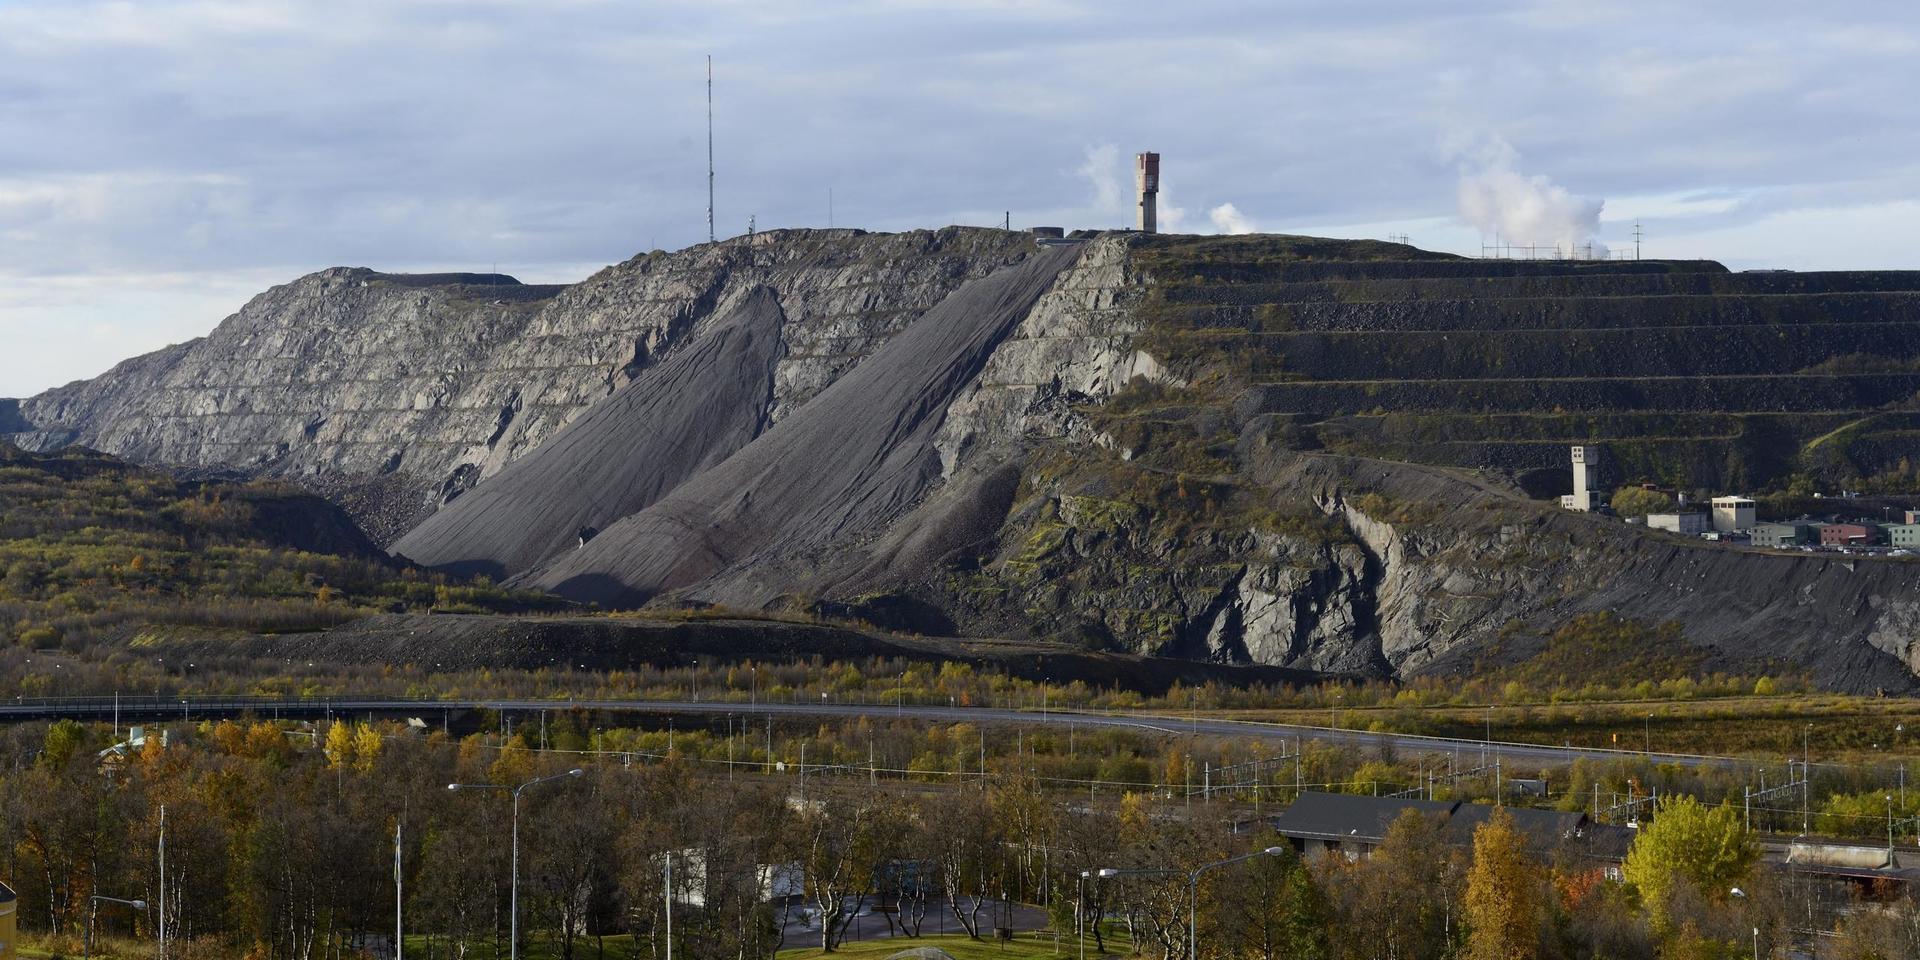 Klimatomställningen kommer att kräva sällsynta jordartsmetaller, men gruvpolitiken är ett hinder på vägen.